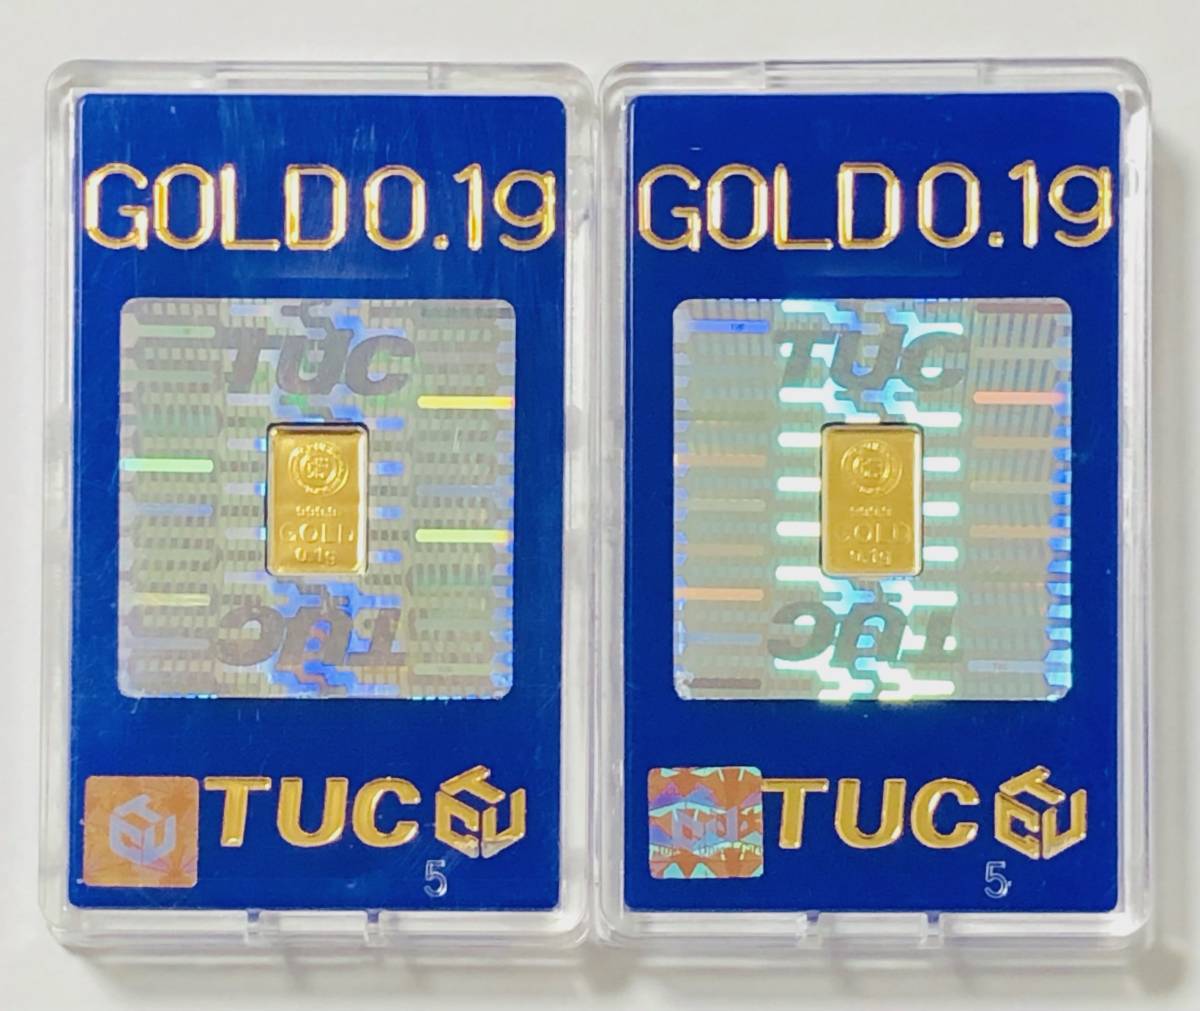 純金 インゴット 0.1g ケース入り K24 999.9 ゴールド 徳力 2個セットの画像1